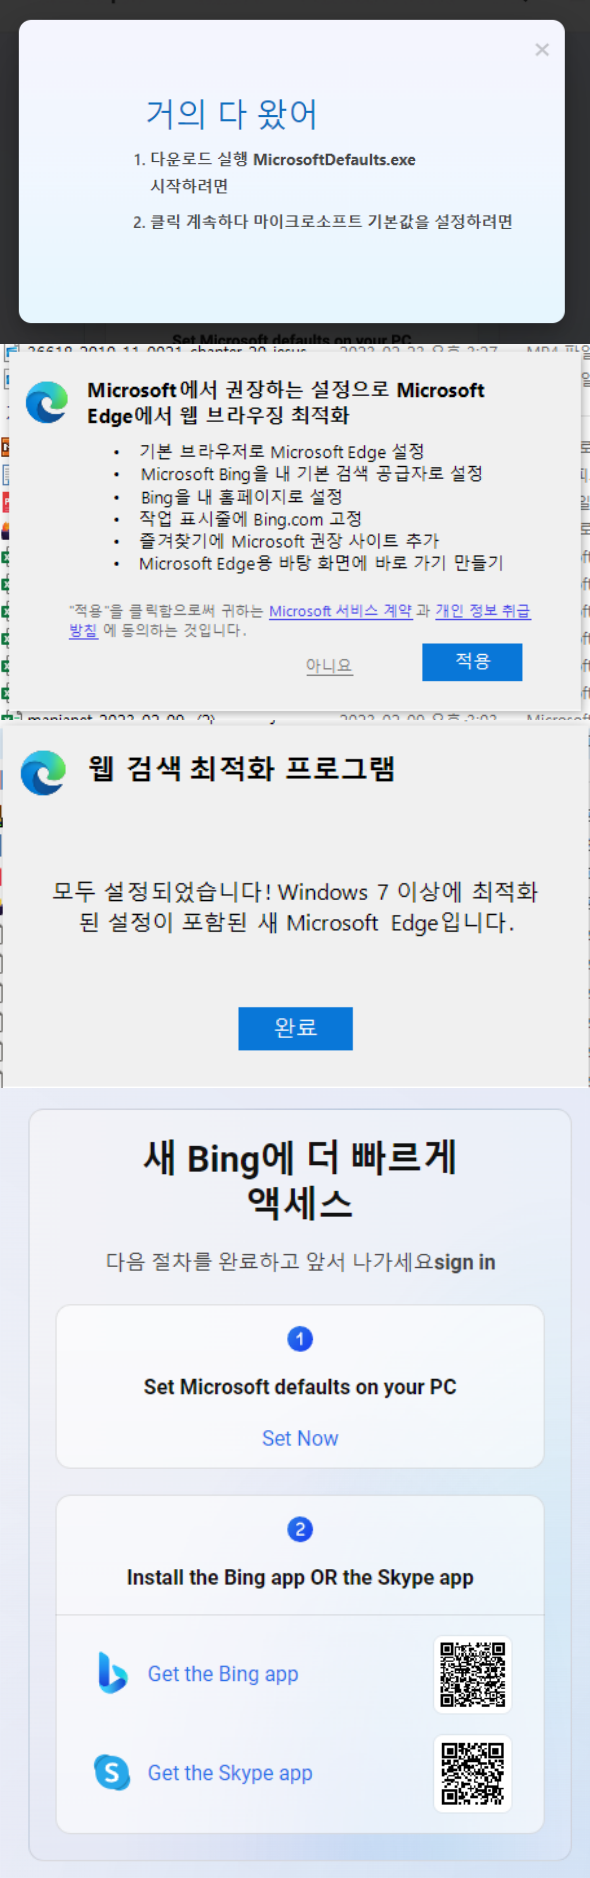 Bing-gpt-run 명령-스크린샷